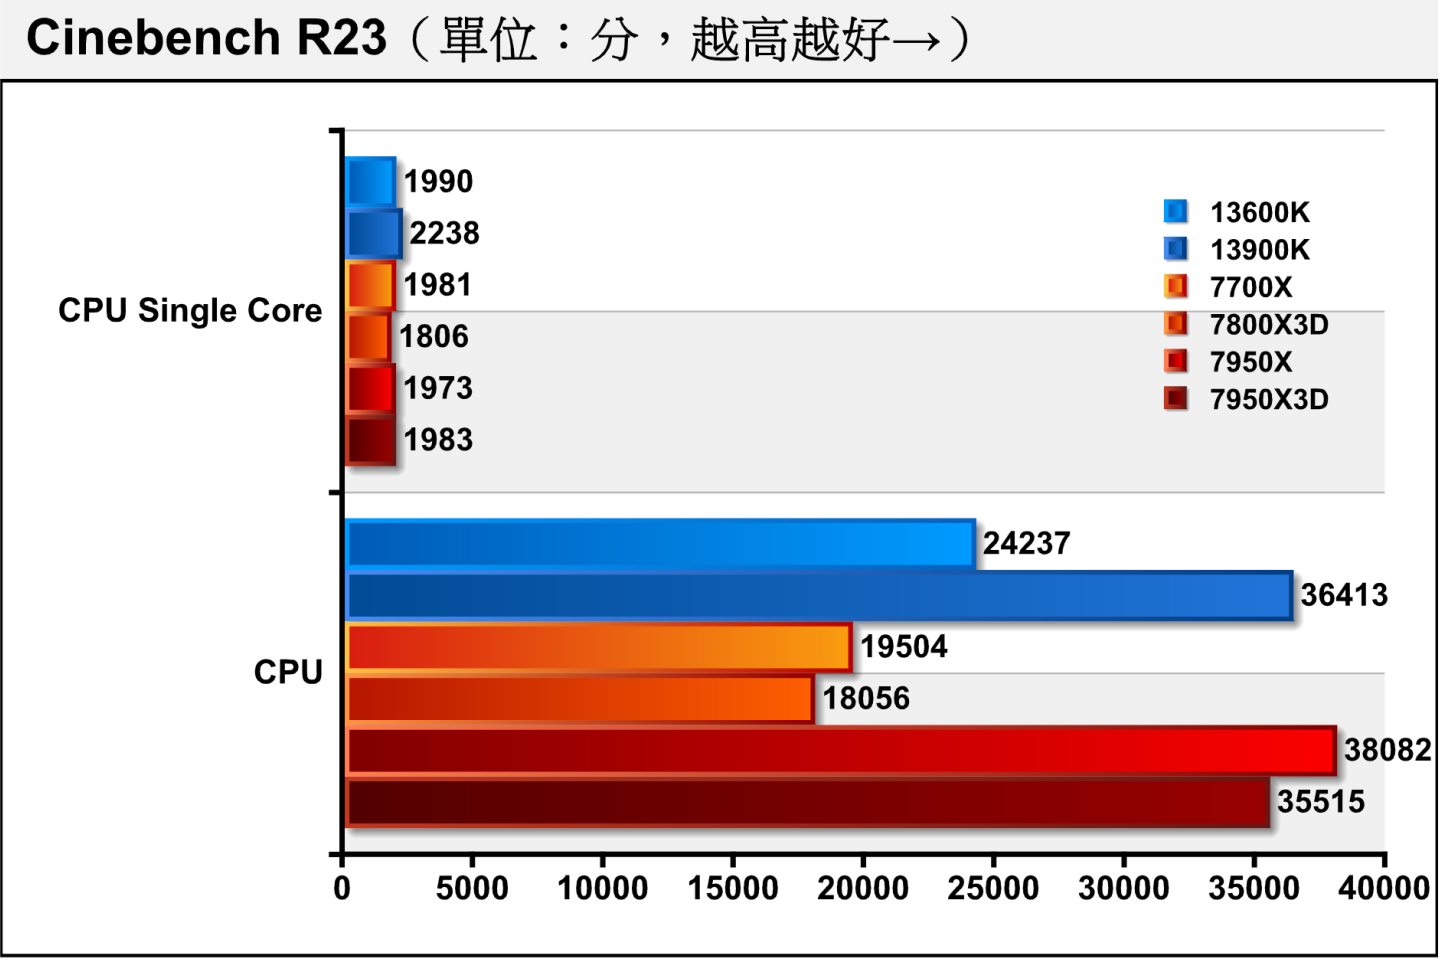 Cinebench R23處理器渲染測試程現相近的趨勢，7800X3D單核心項目落後7700X達7.42%，多核心項目落後差距拉大到8.83%。